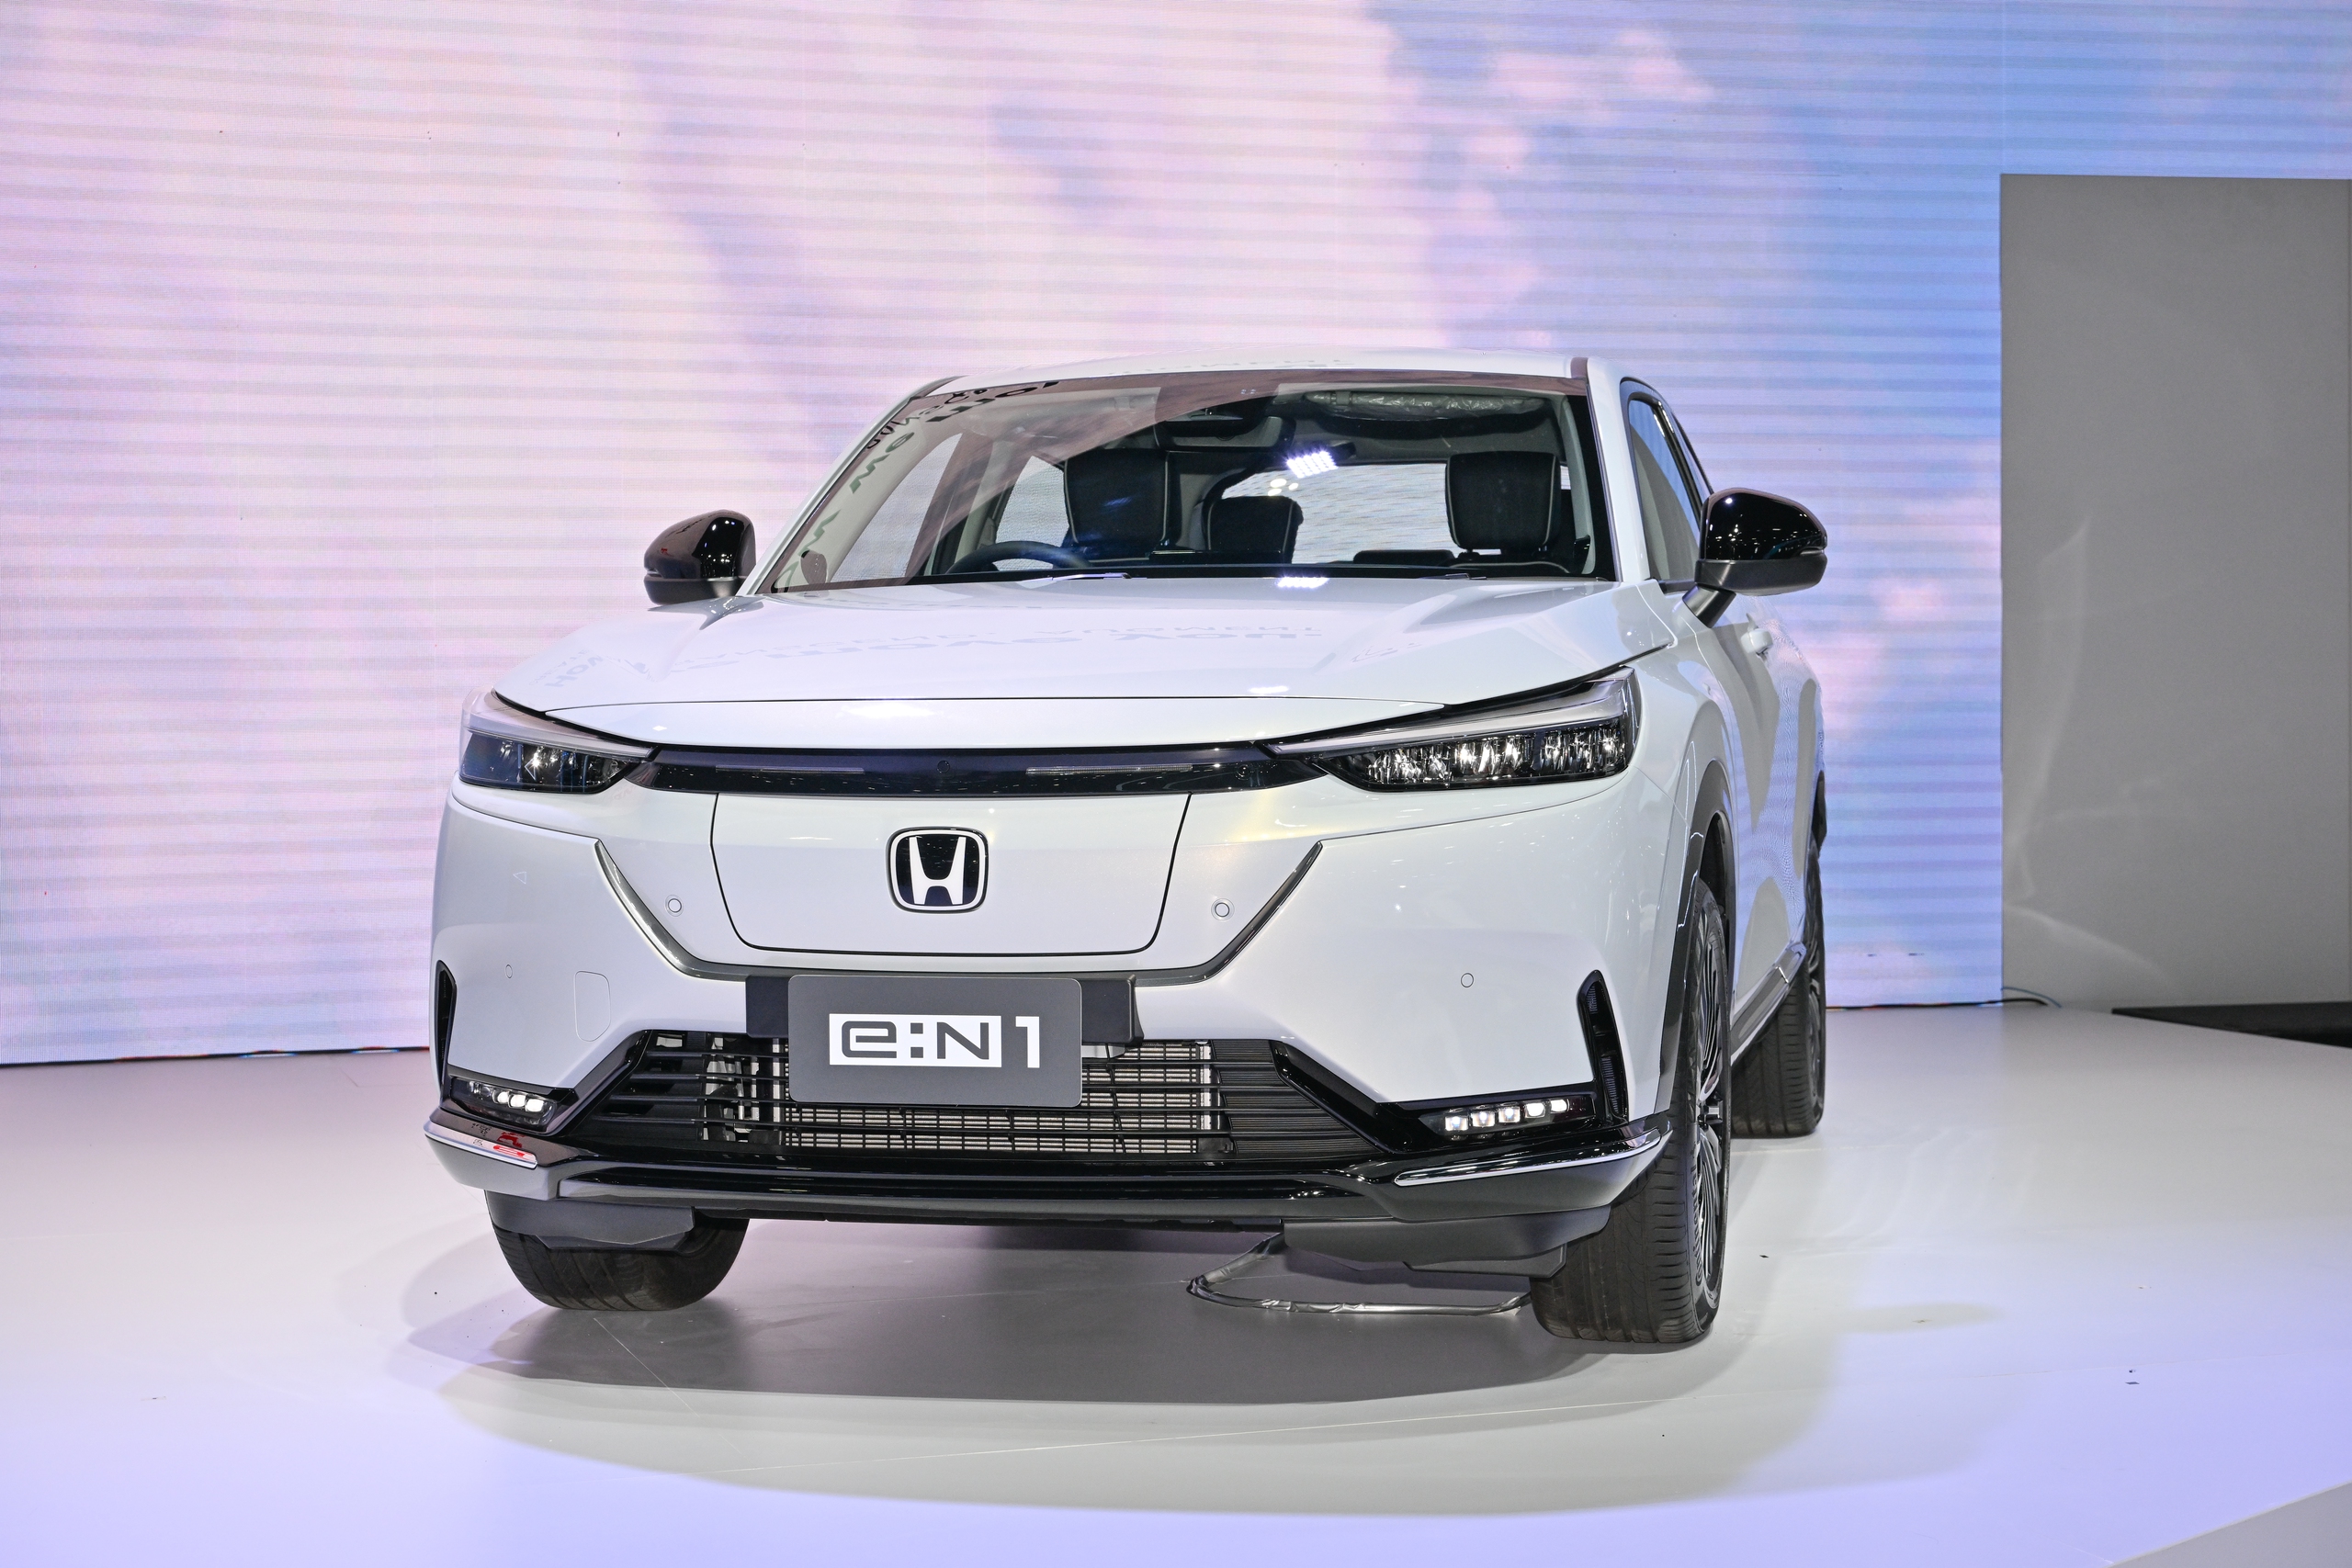 Chi tiết Honda HR-V thuần điện: Nhiều tiện nghi, một lần sạc đi được 500km, đi Hà Nội - Hạ Long rồi về vẫn thừa - ảnh 3